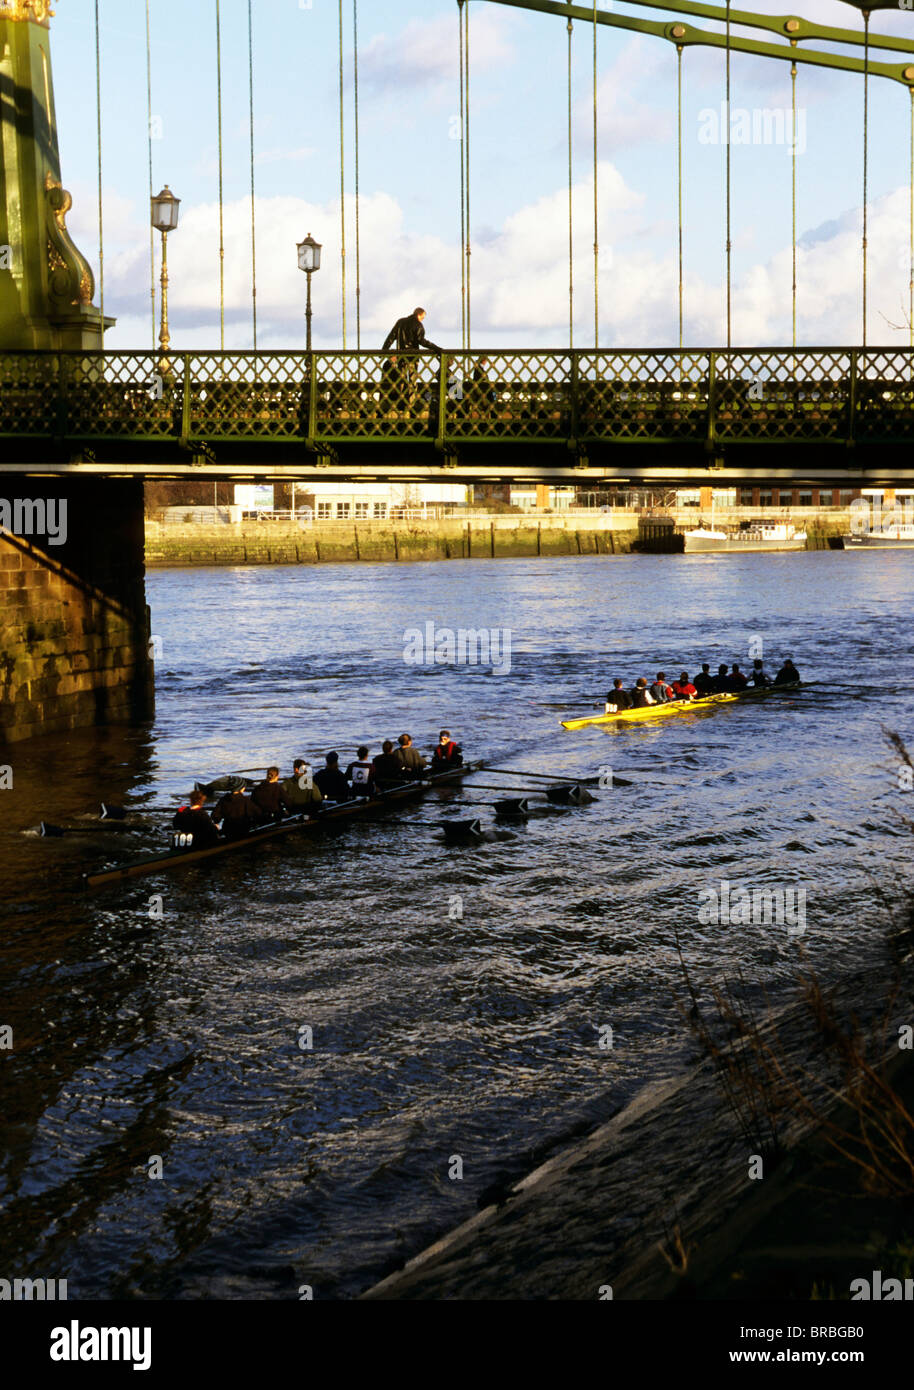 Remo ochos cruzar bajo un puente sobre el río Támesis Foto de stock